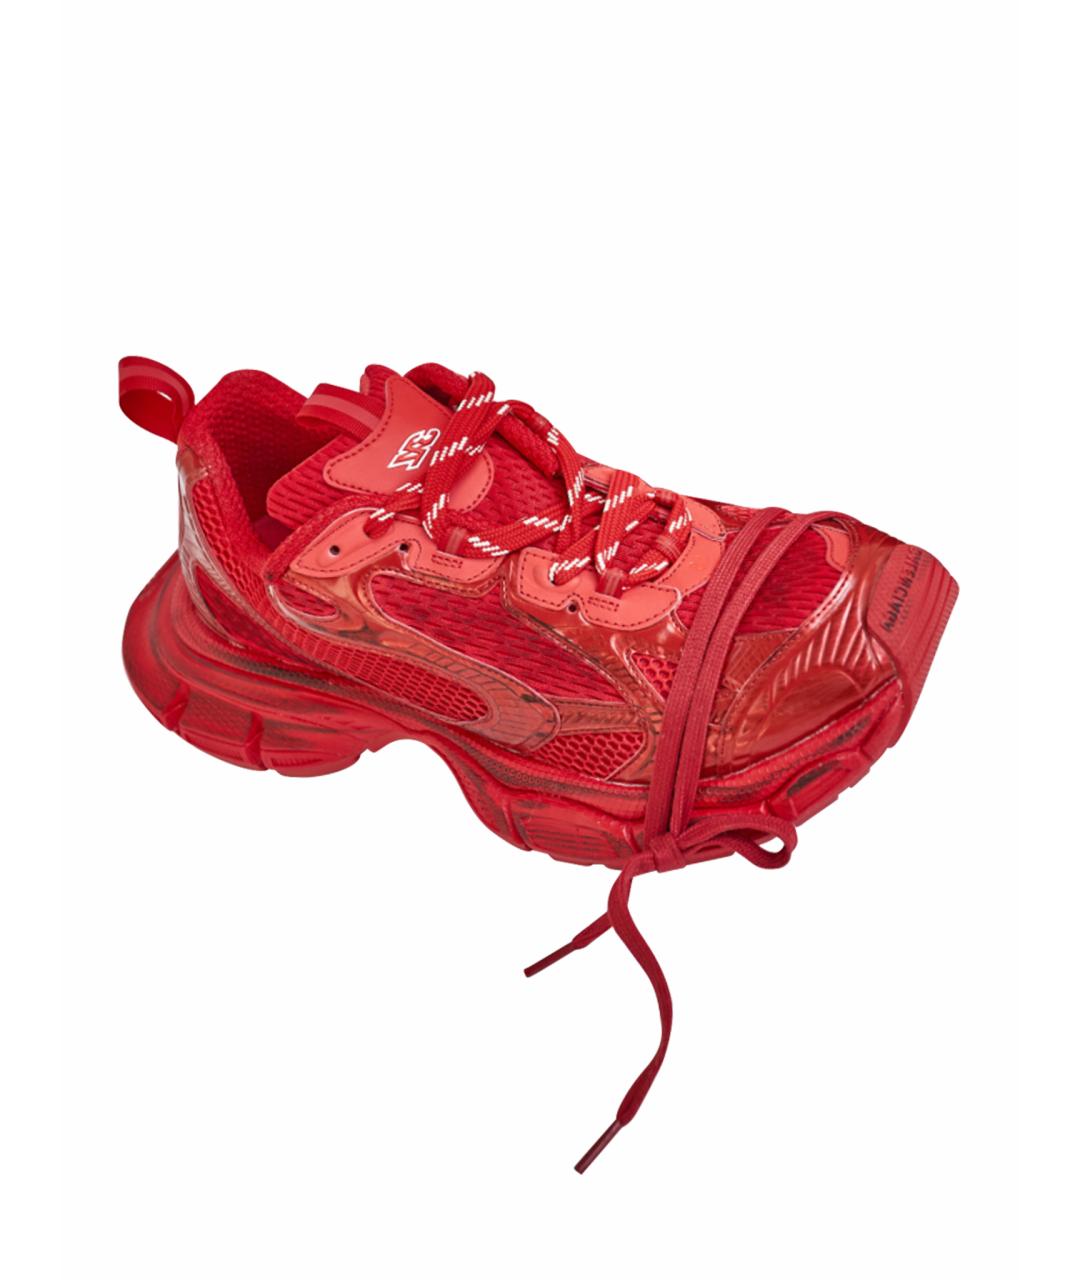 BALENCIAGA Красные кожаные низкие кроссовки / кеды, фото 1